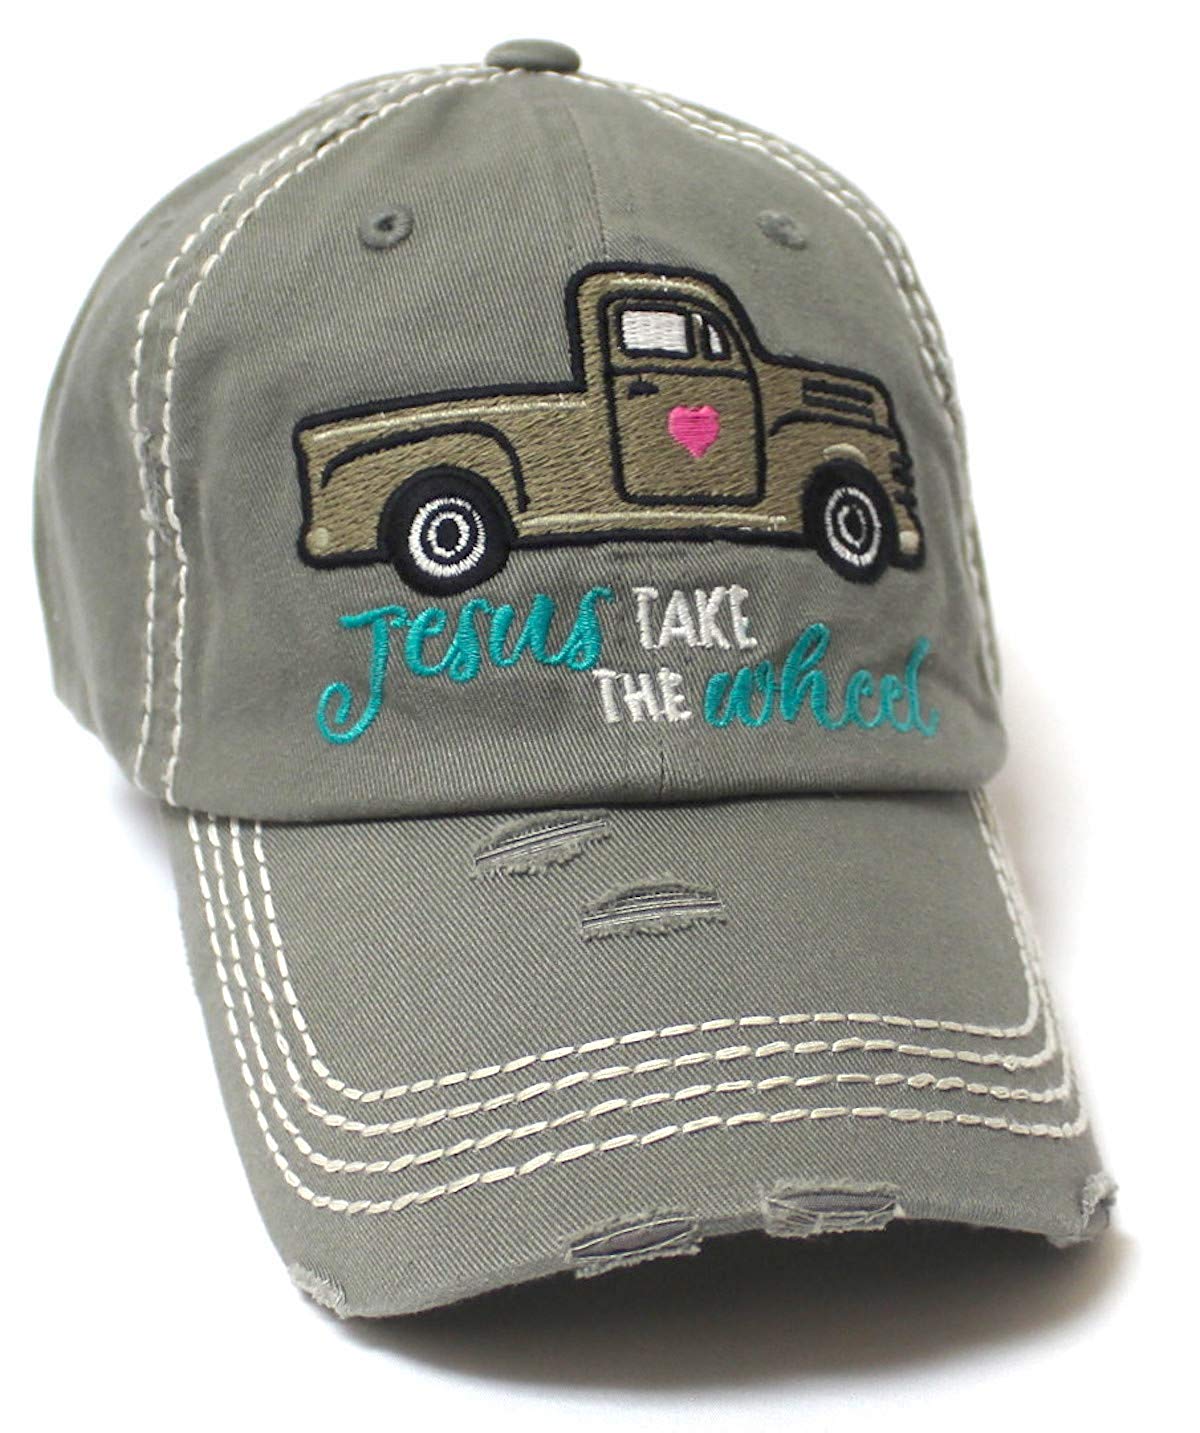 CAPS 'N VINTAGE Women's Camping Cap Jesus Take The Wheel Truck Heart Embroidery Hat, Slate Grey - Caps 'N Vintage 